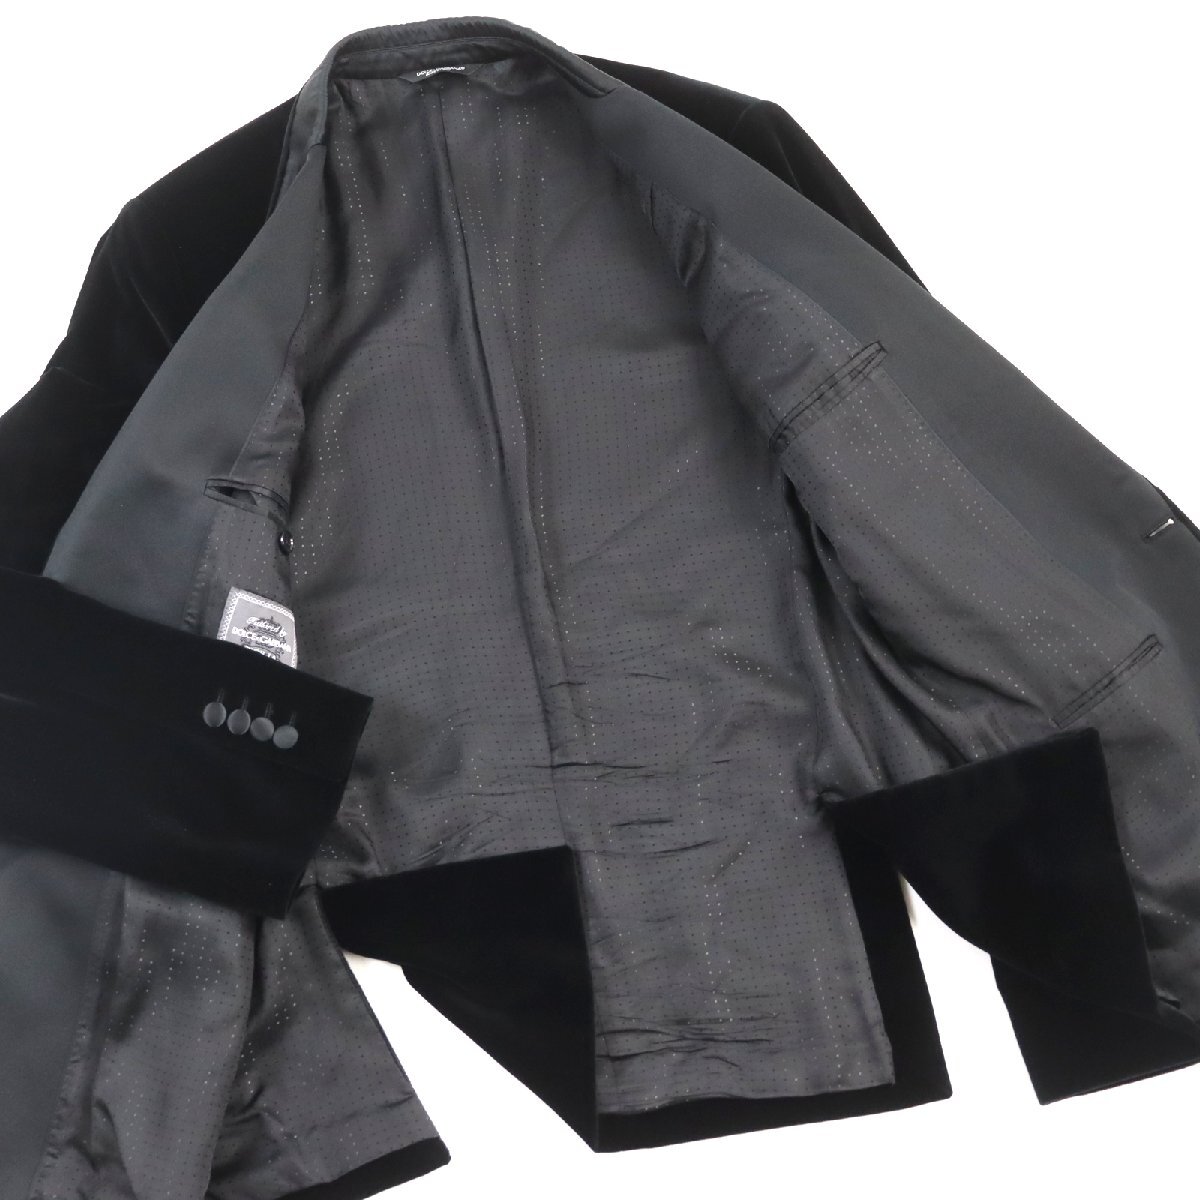  прекрасный товар 0 Dolce & Gabbana TAORMINA SICILIA линия шелк . чёрный бирка велюр одиночный tailored jacket чёрный 52 сделано в Италии стандартный товар мужской 